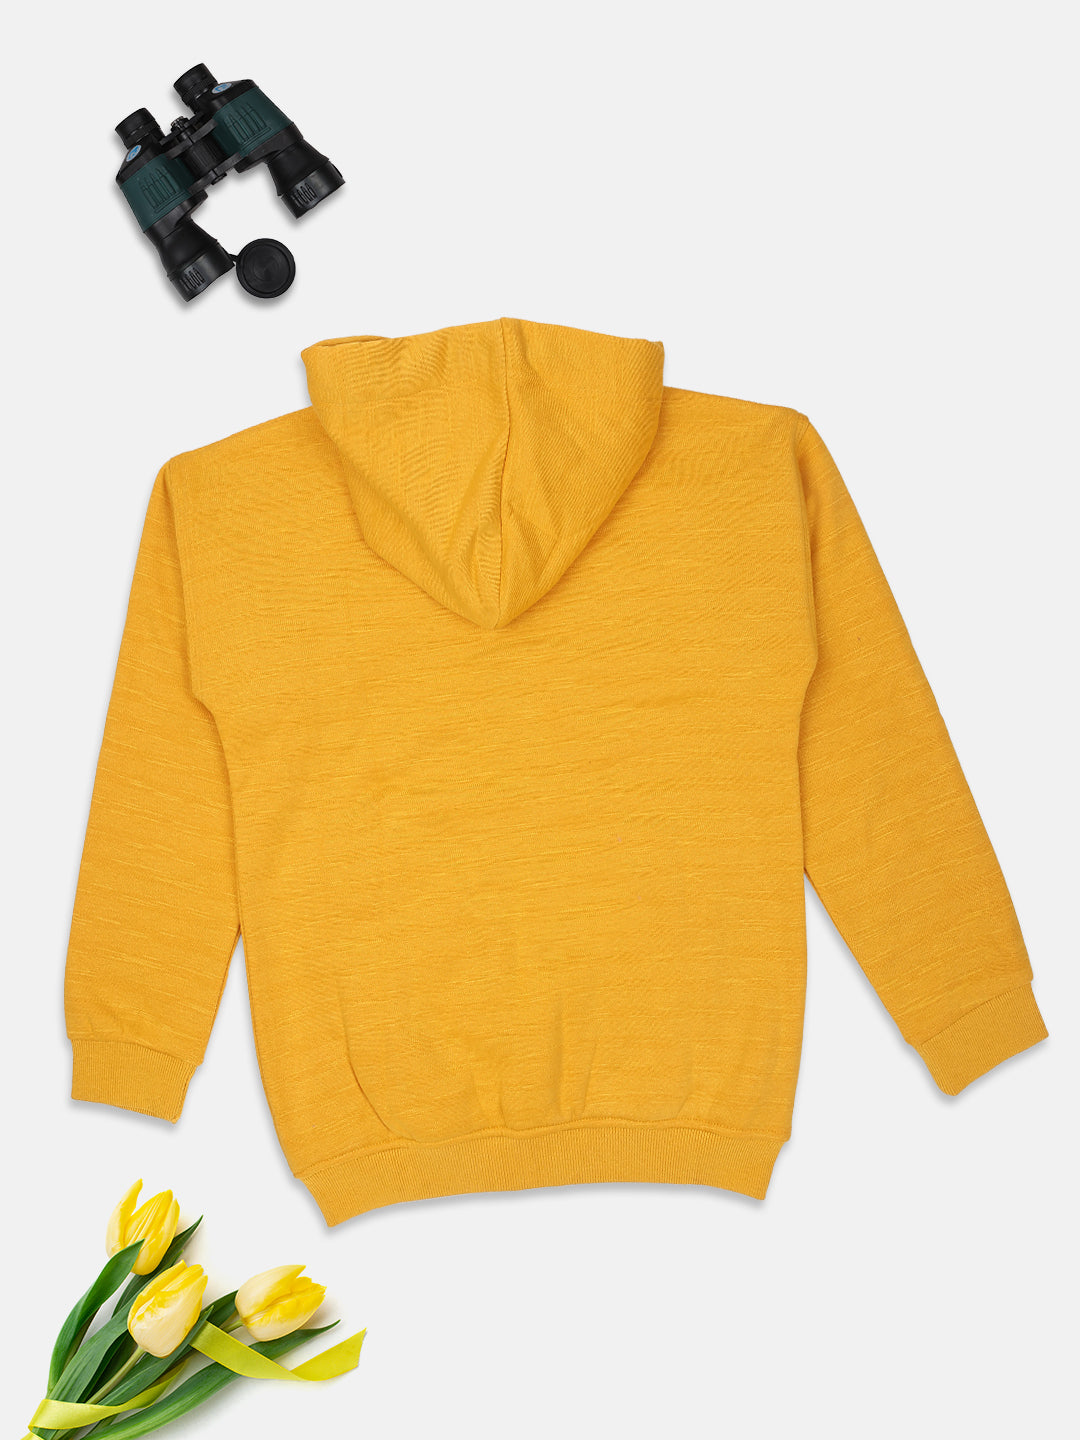 Ziama Girls Solid Sweatshirt Zipper With Hoddie-MUSTARD